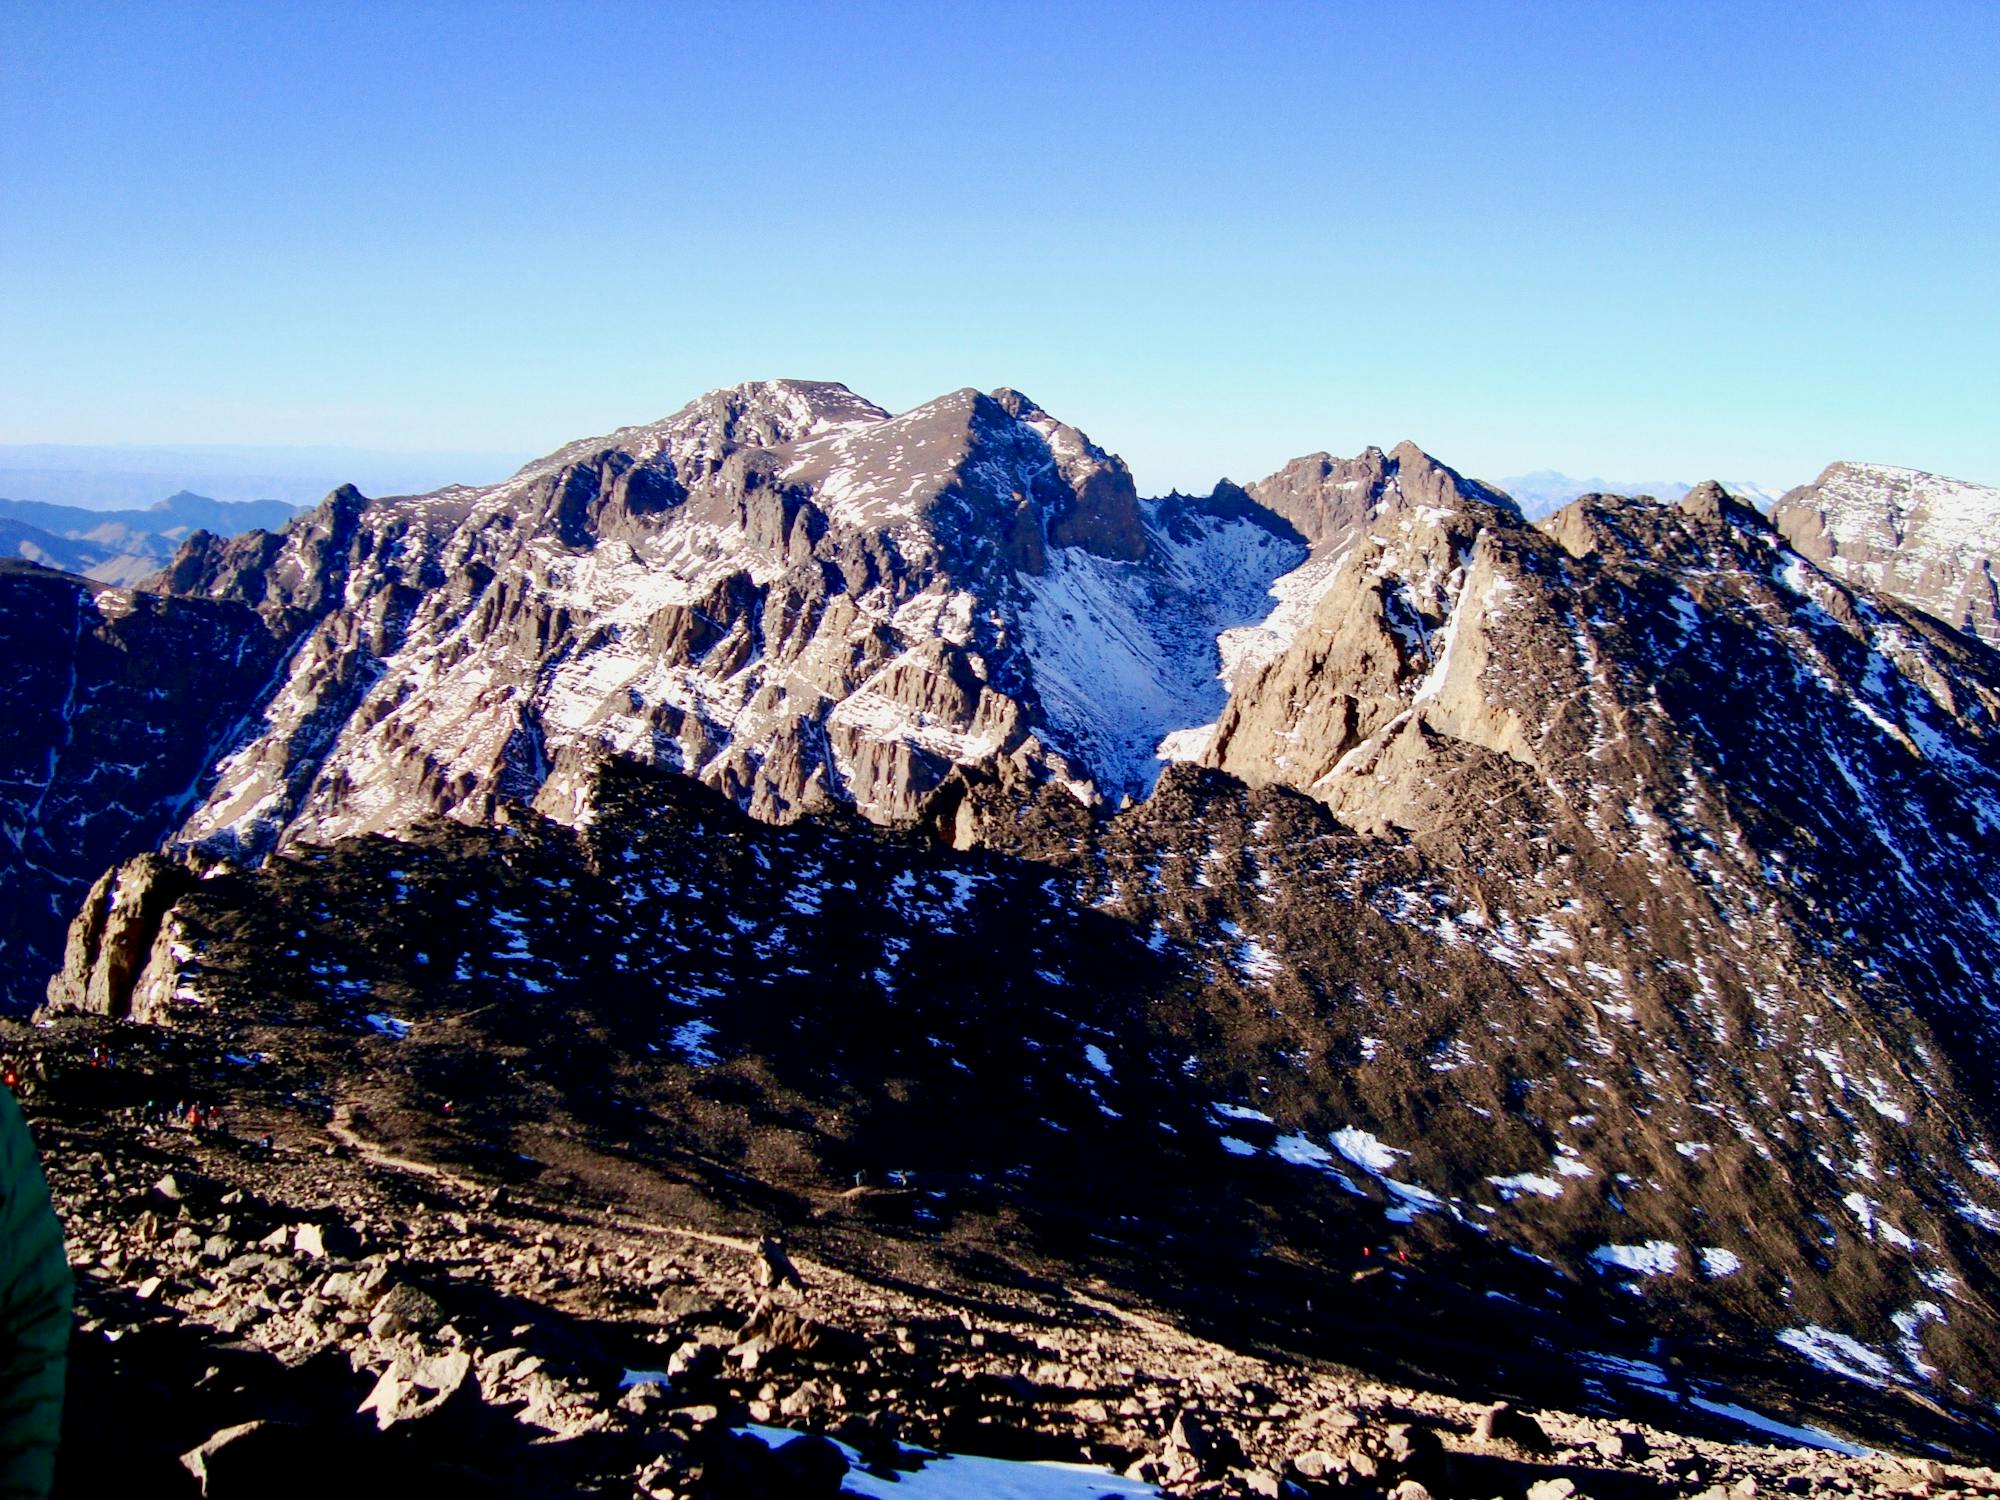 Mount Toubkal Summit Hike: Refuge du Toubkal to Summit